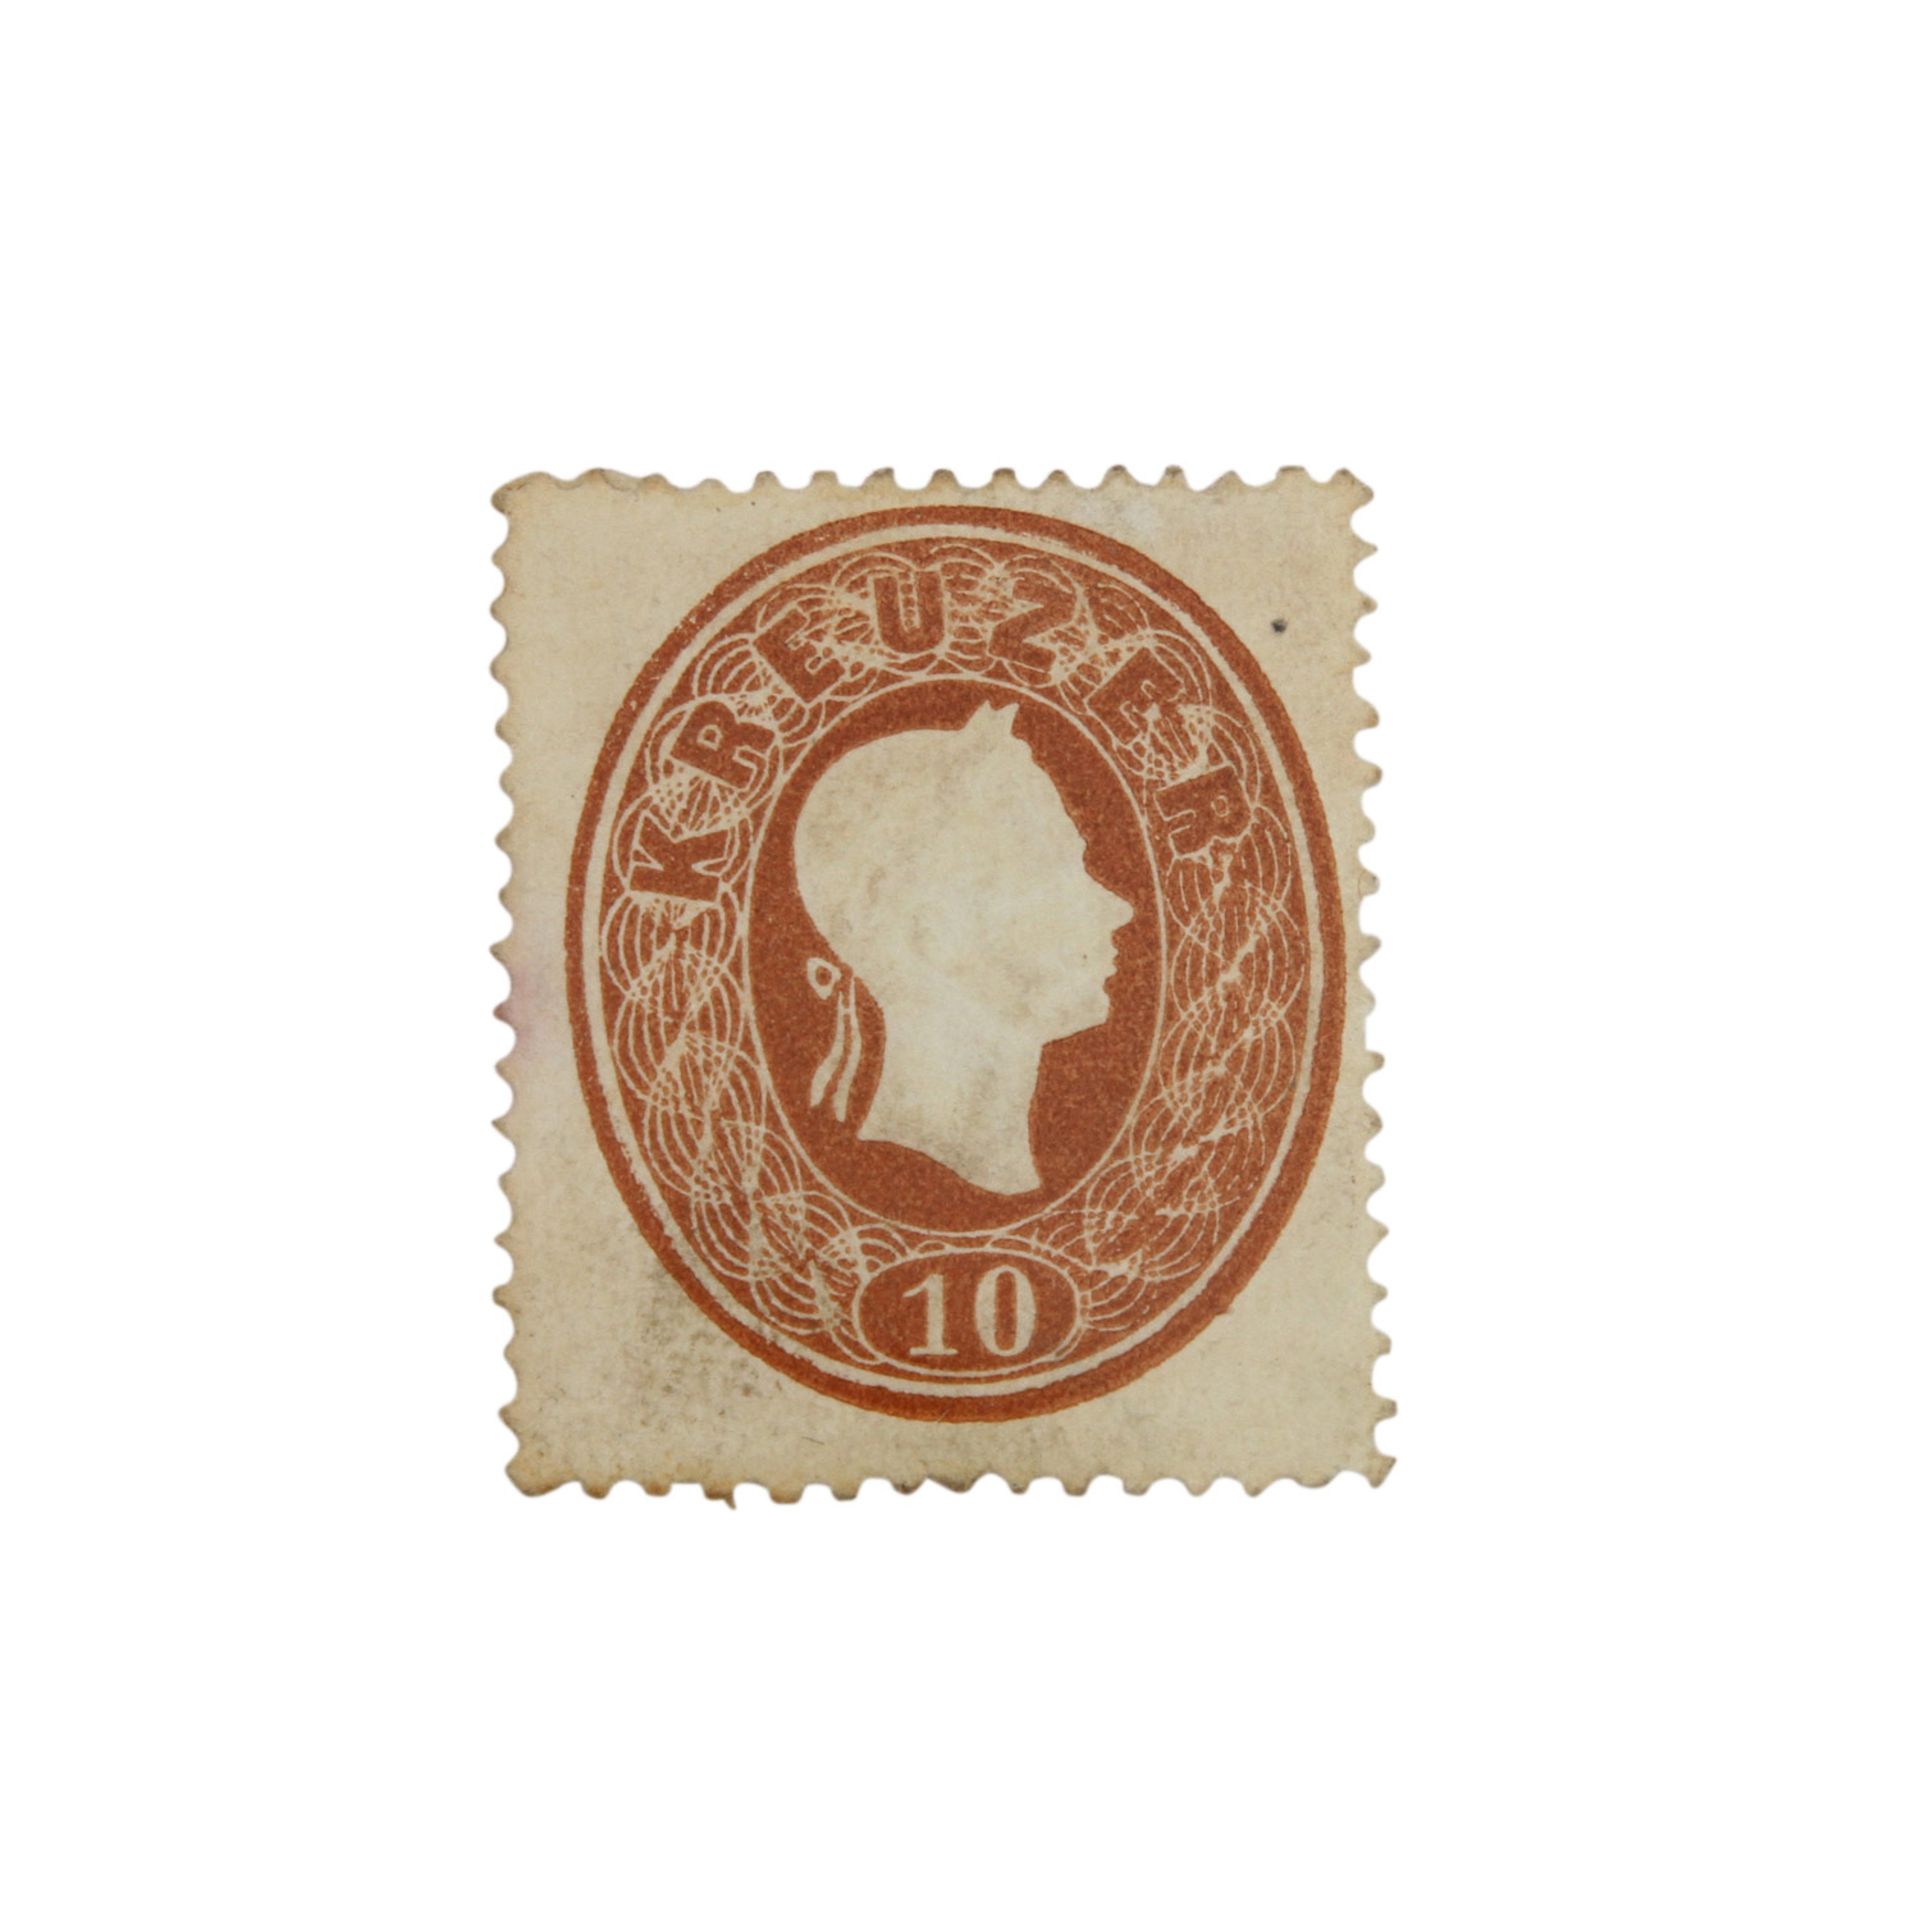 Österreich 1860 – Freimarkenausgabe Mi.Nr. 21a, Ferch Nr. 21a, 10 Kreuzer braun. Vollzähnige und - Bild 2 aus 3